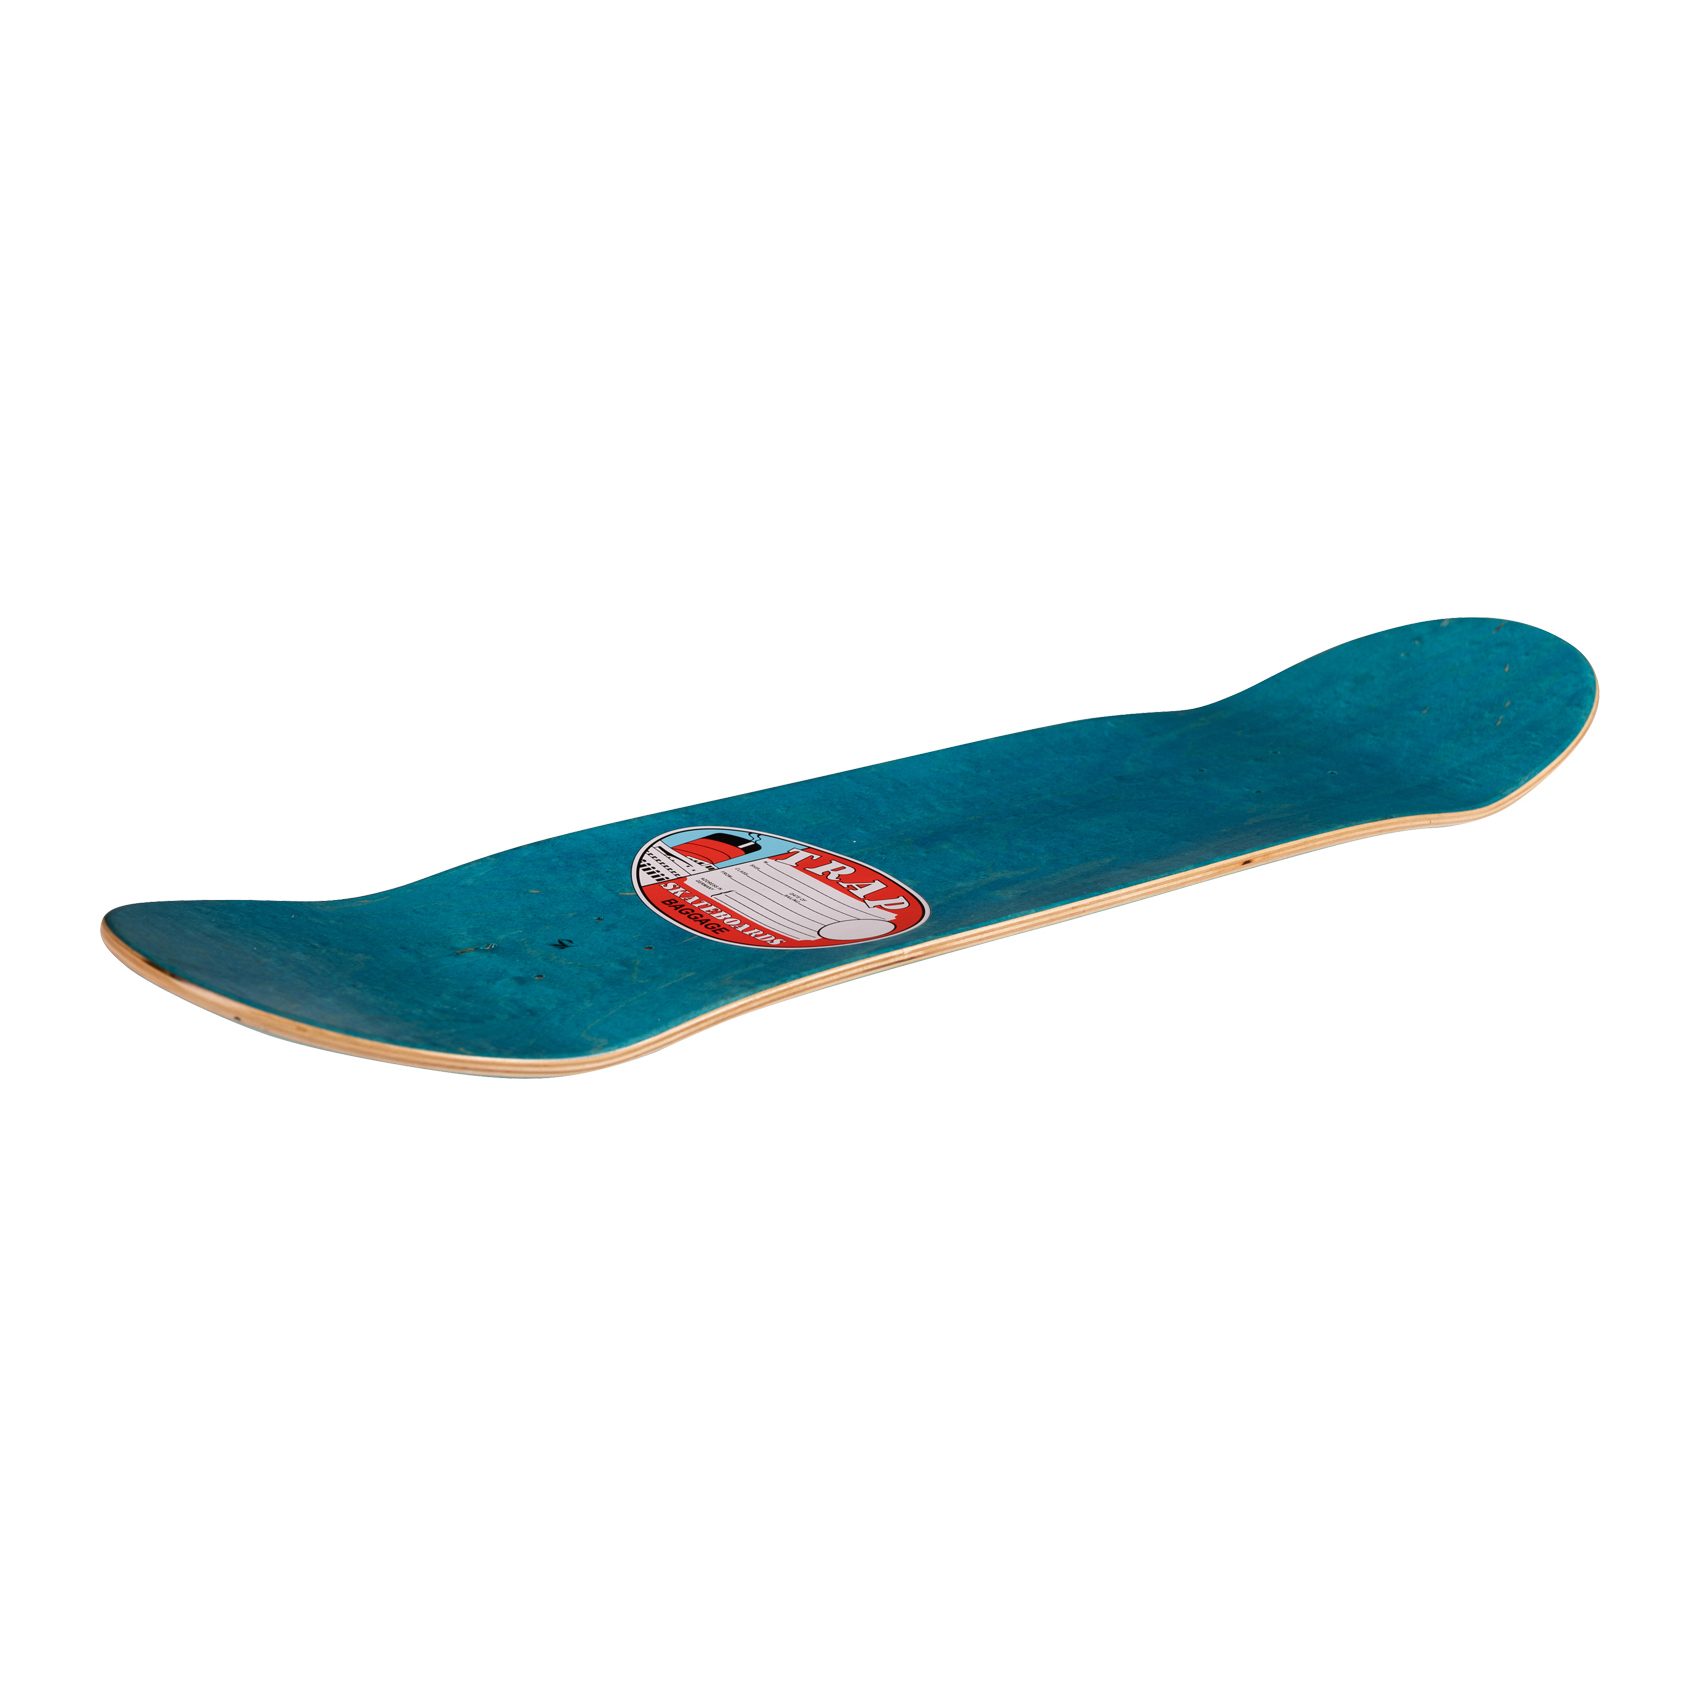 Trap Skateboard Deck Ship Pascal Reif 8.125" (white)